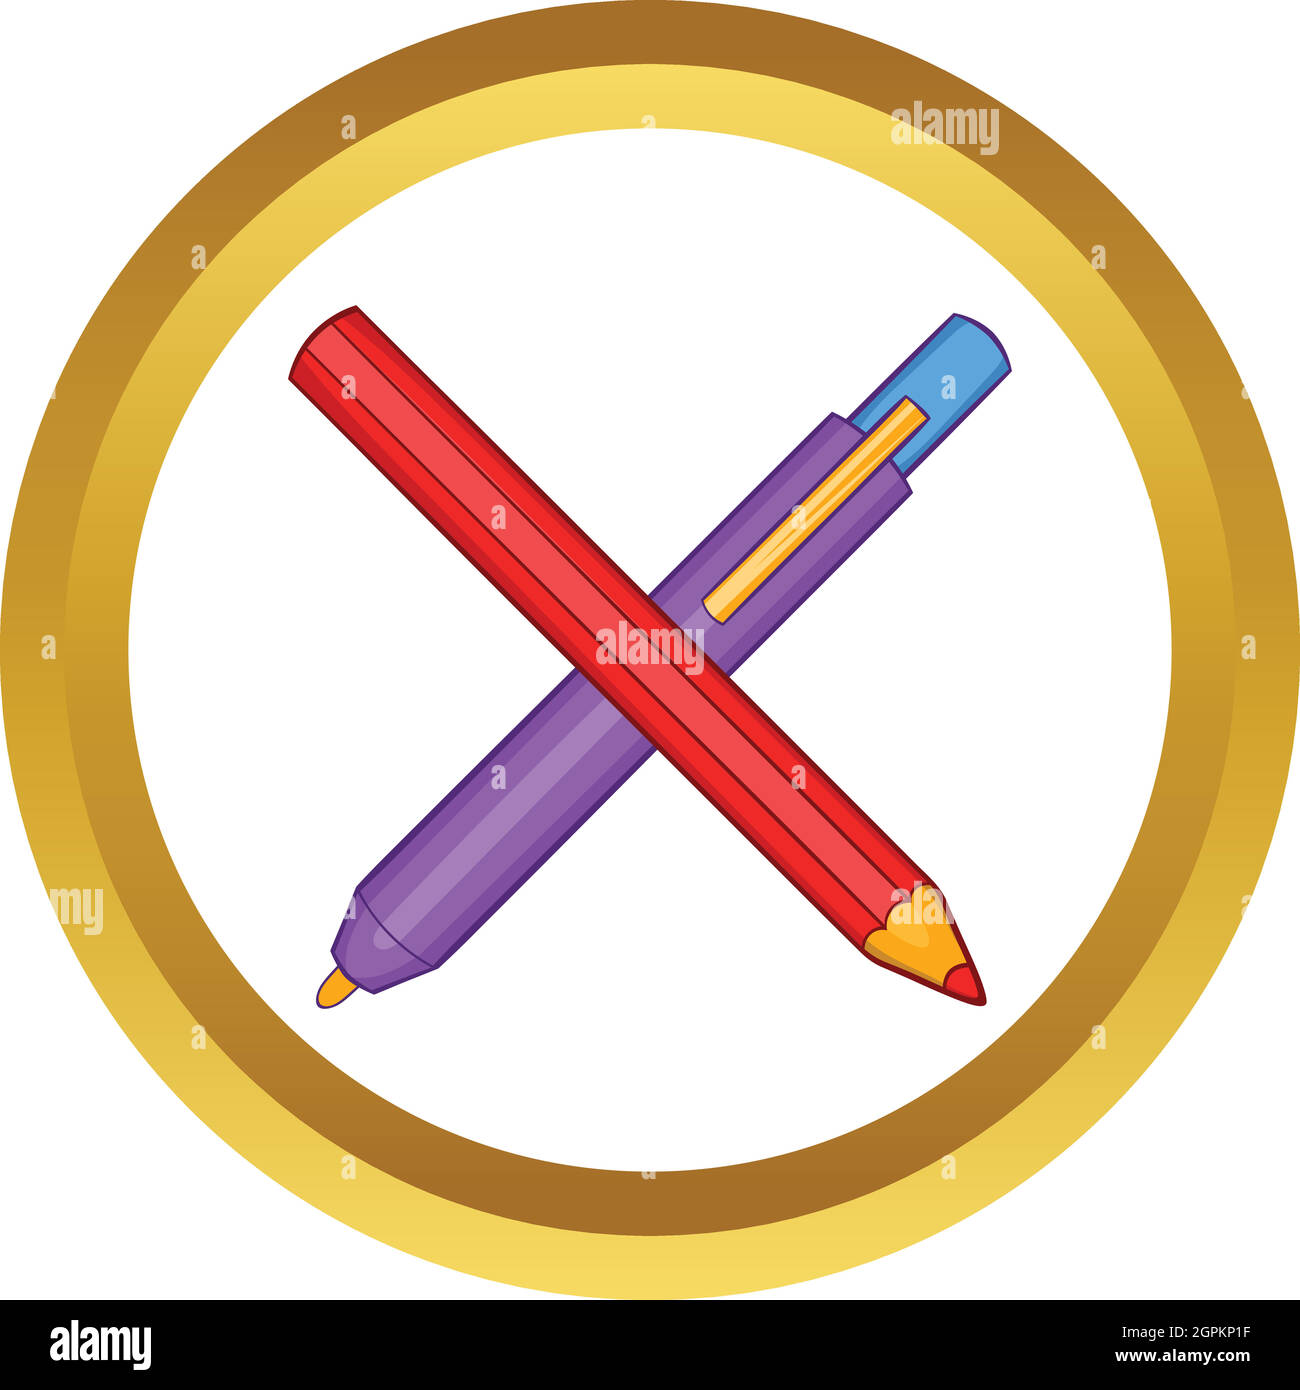 Pencil and pen vector icon Stock Vector